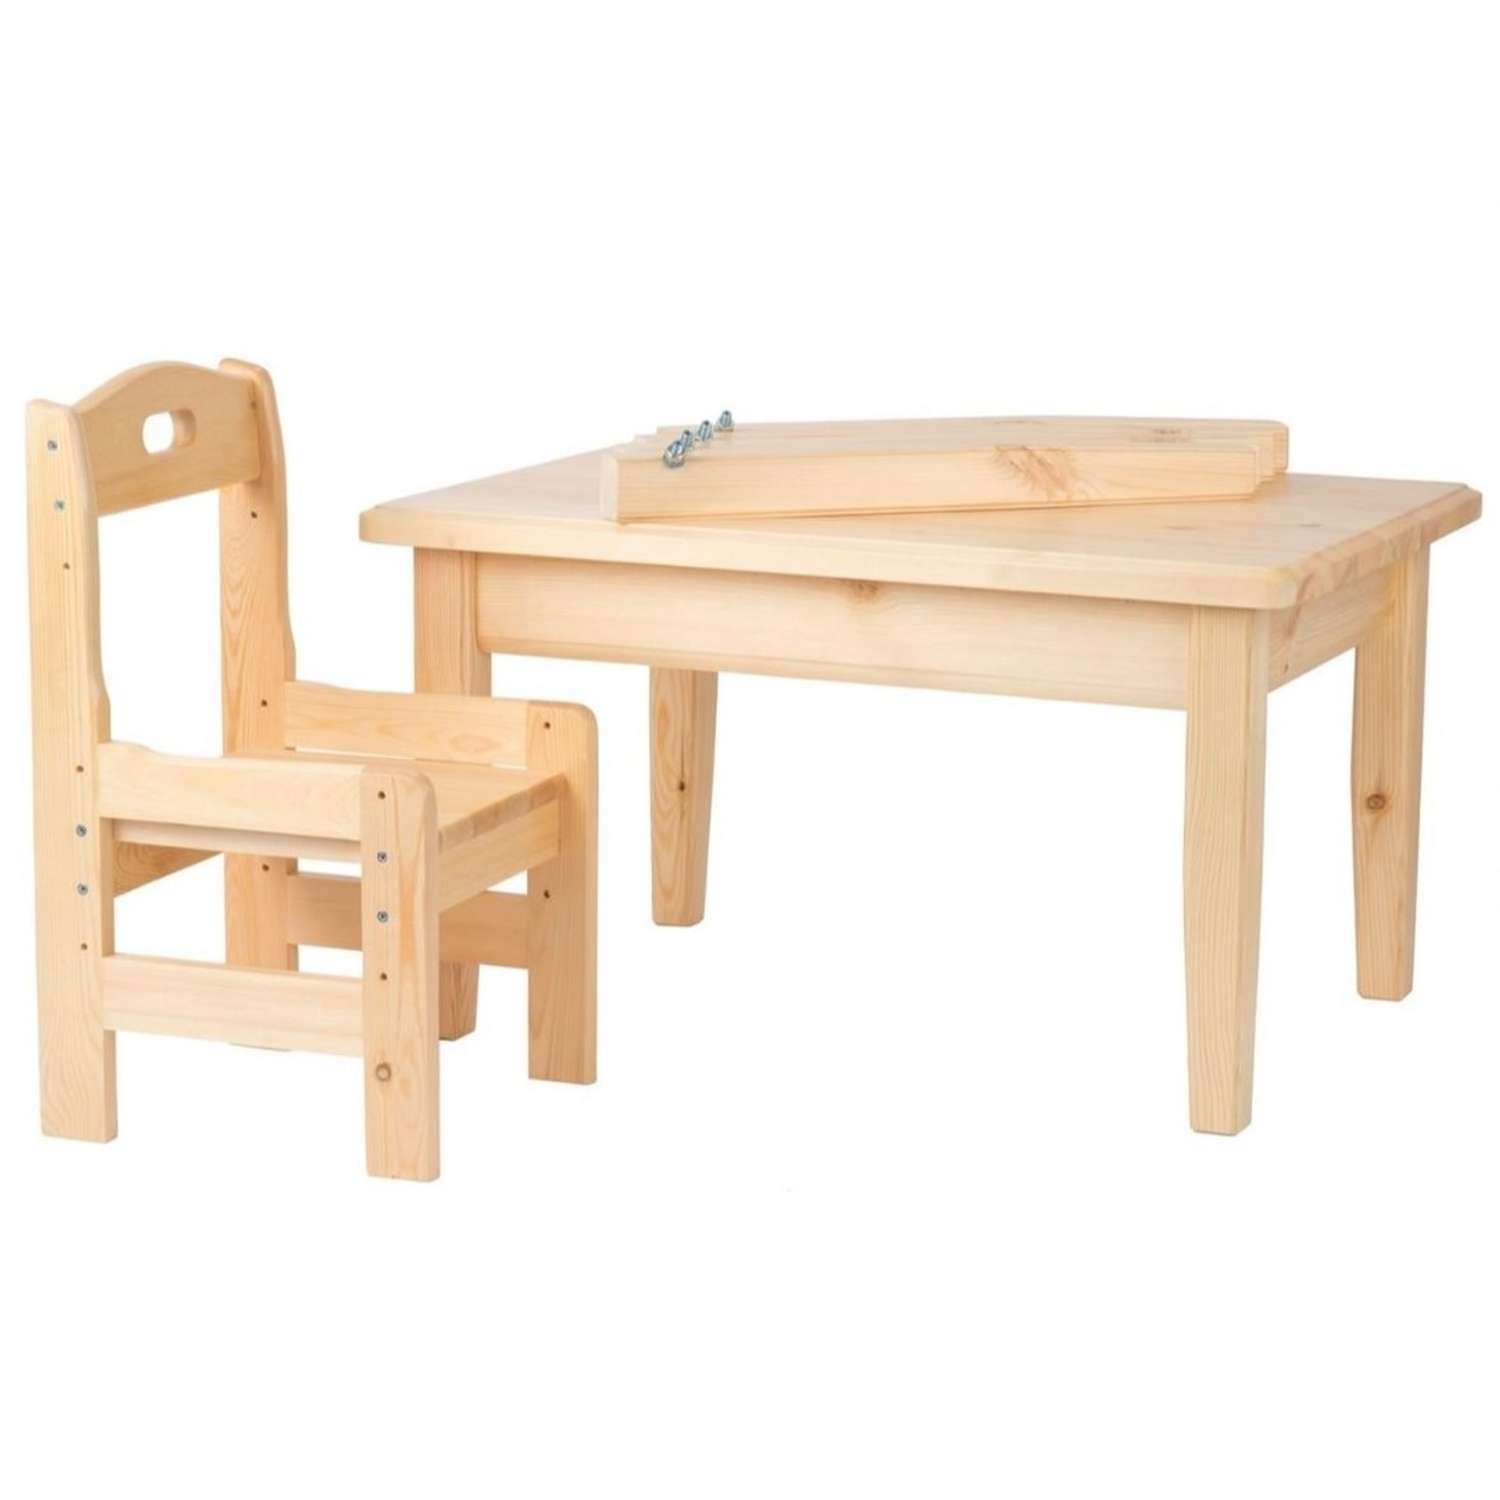 Набор Мебель для дошколят стол со стульчиком регулируемый для детей от 2 до 6 лет - фото 3